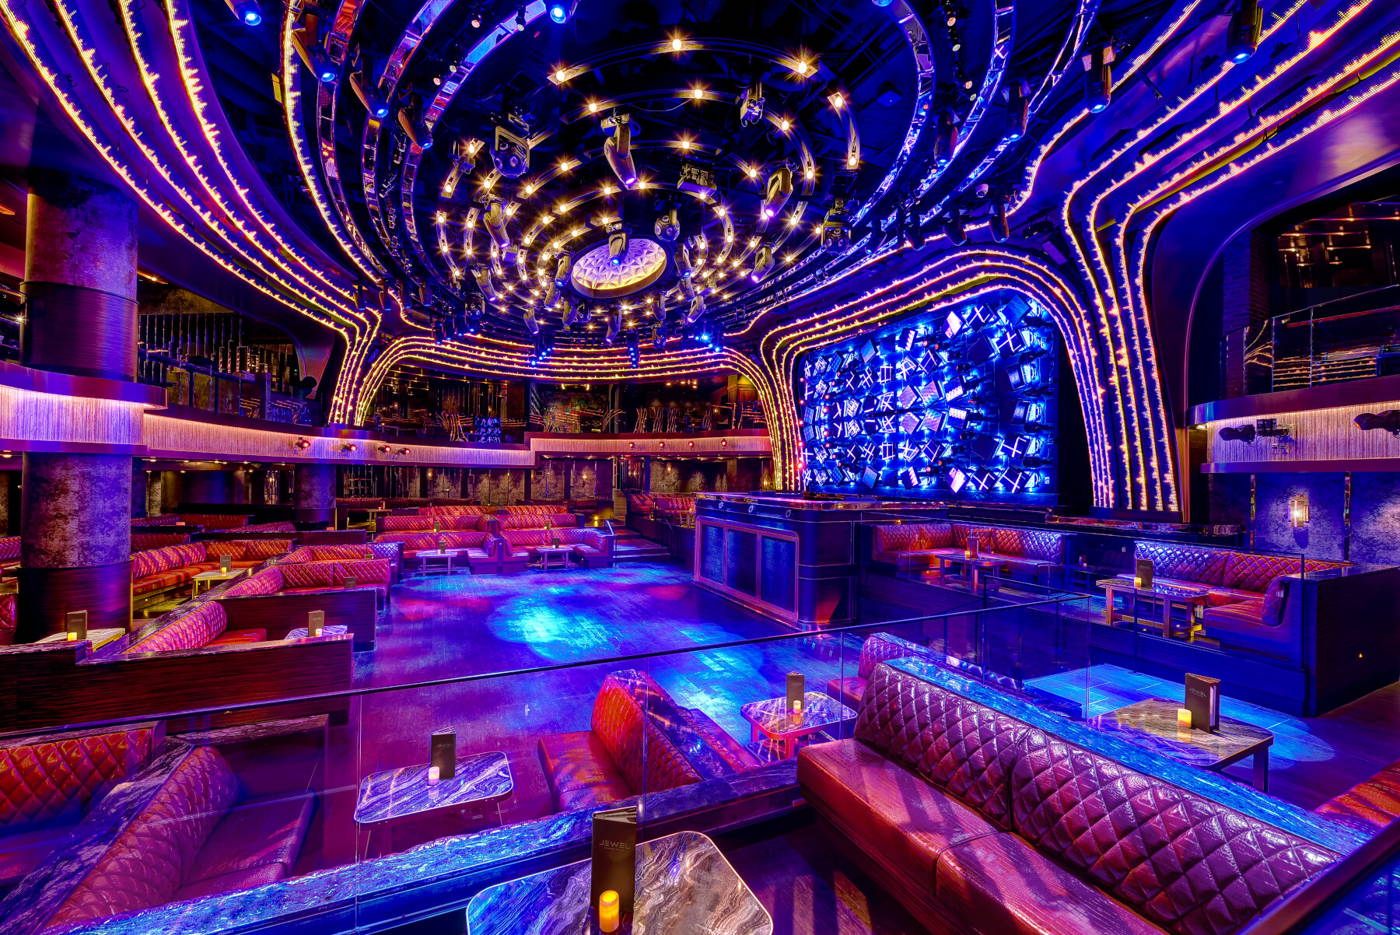 Jewel Nightclub at Aria Las Vegas